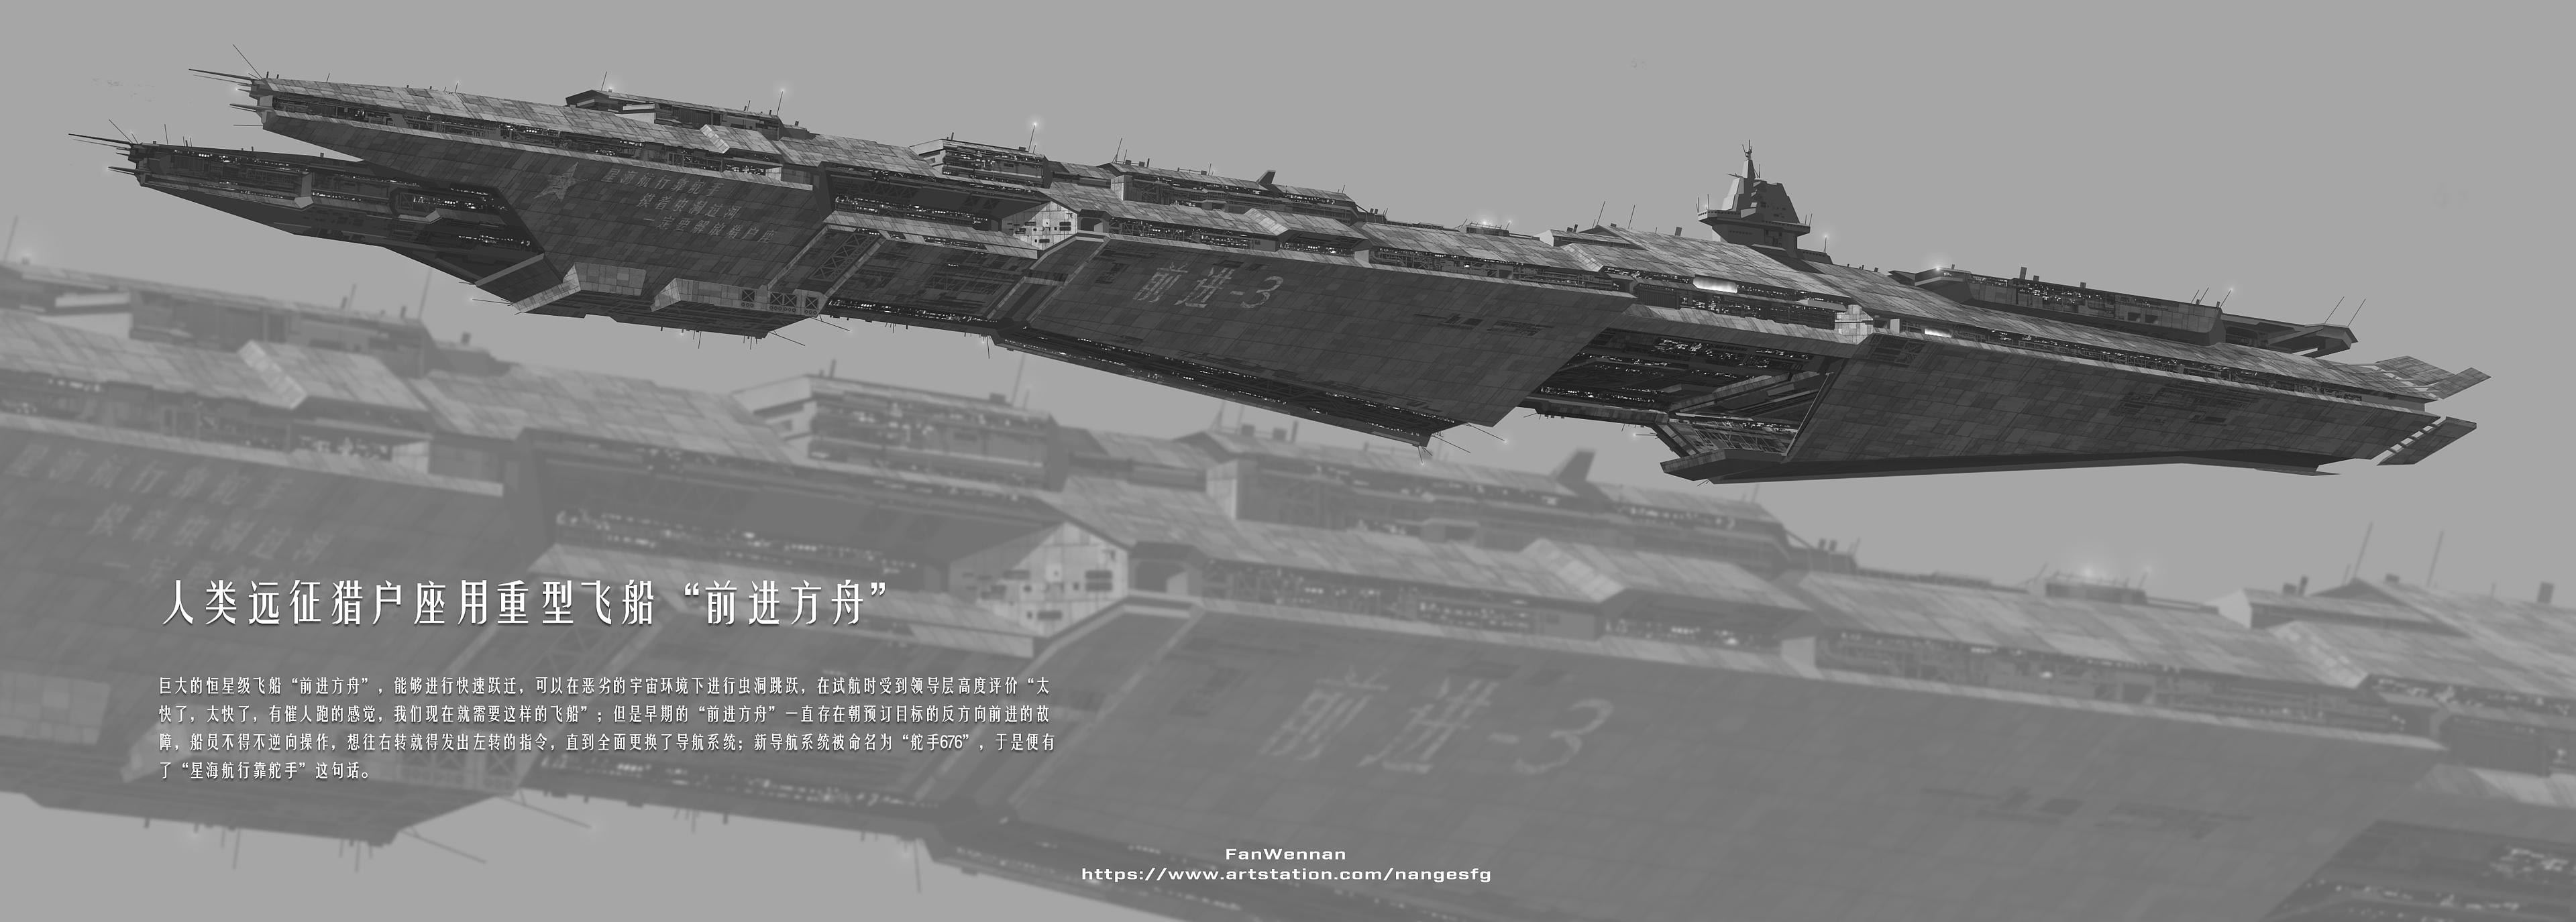 China 2098, spaceship